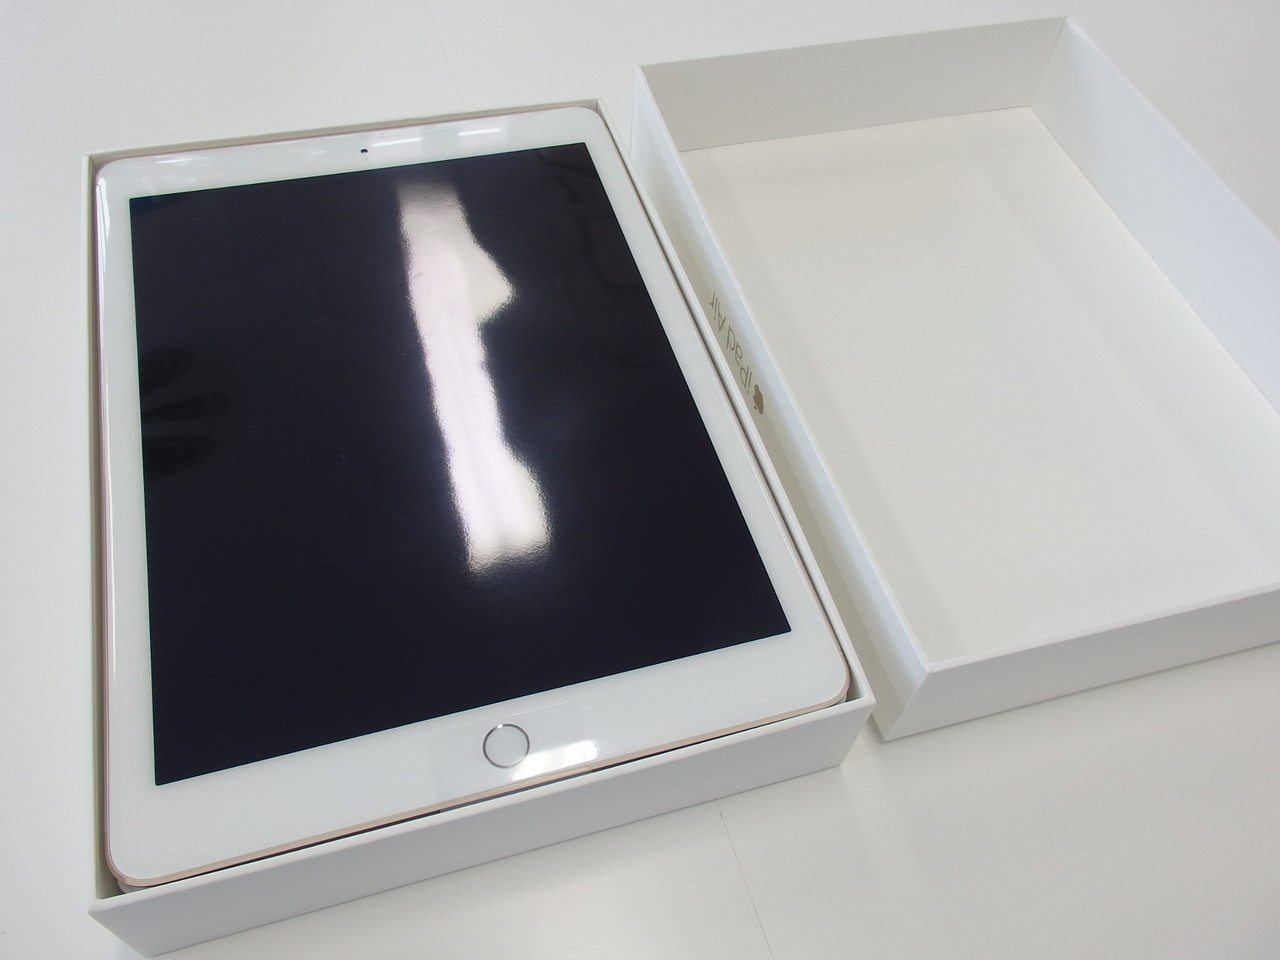 新発売のApple製9.7インチタブレット「iPad Air 2」をさっそく購入！まずは開封してみた【レビュー】 - S-MAX